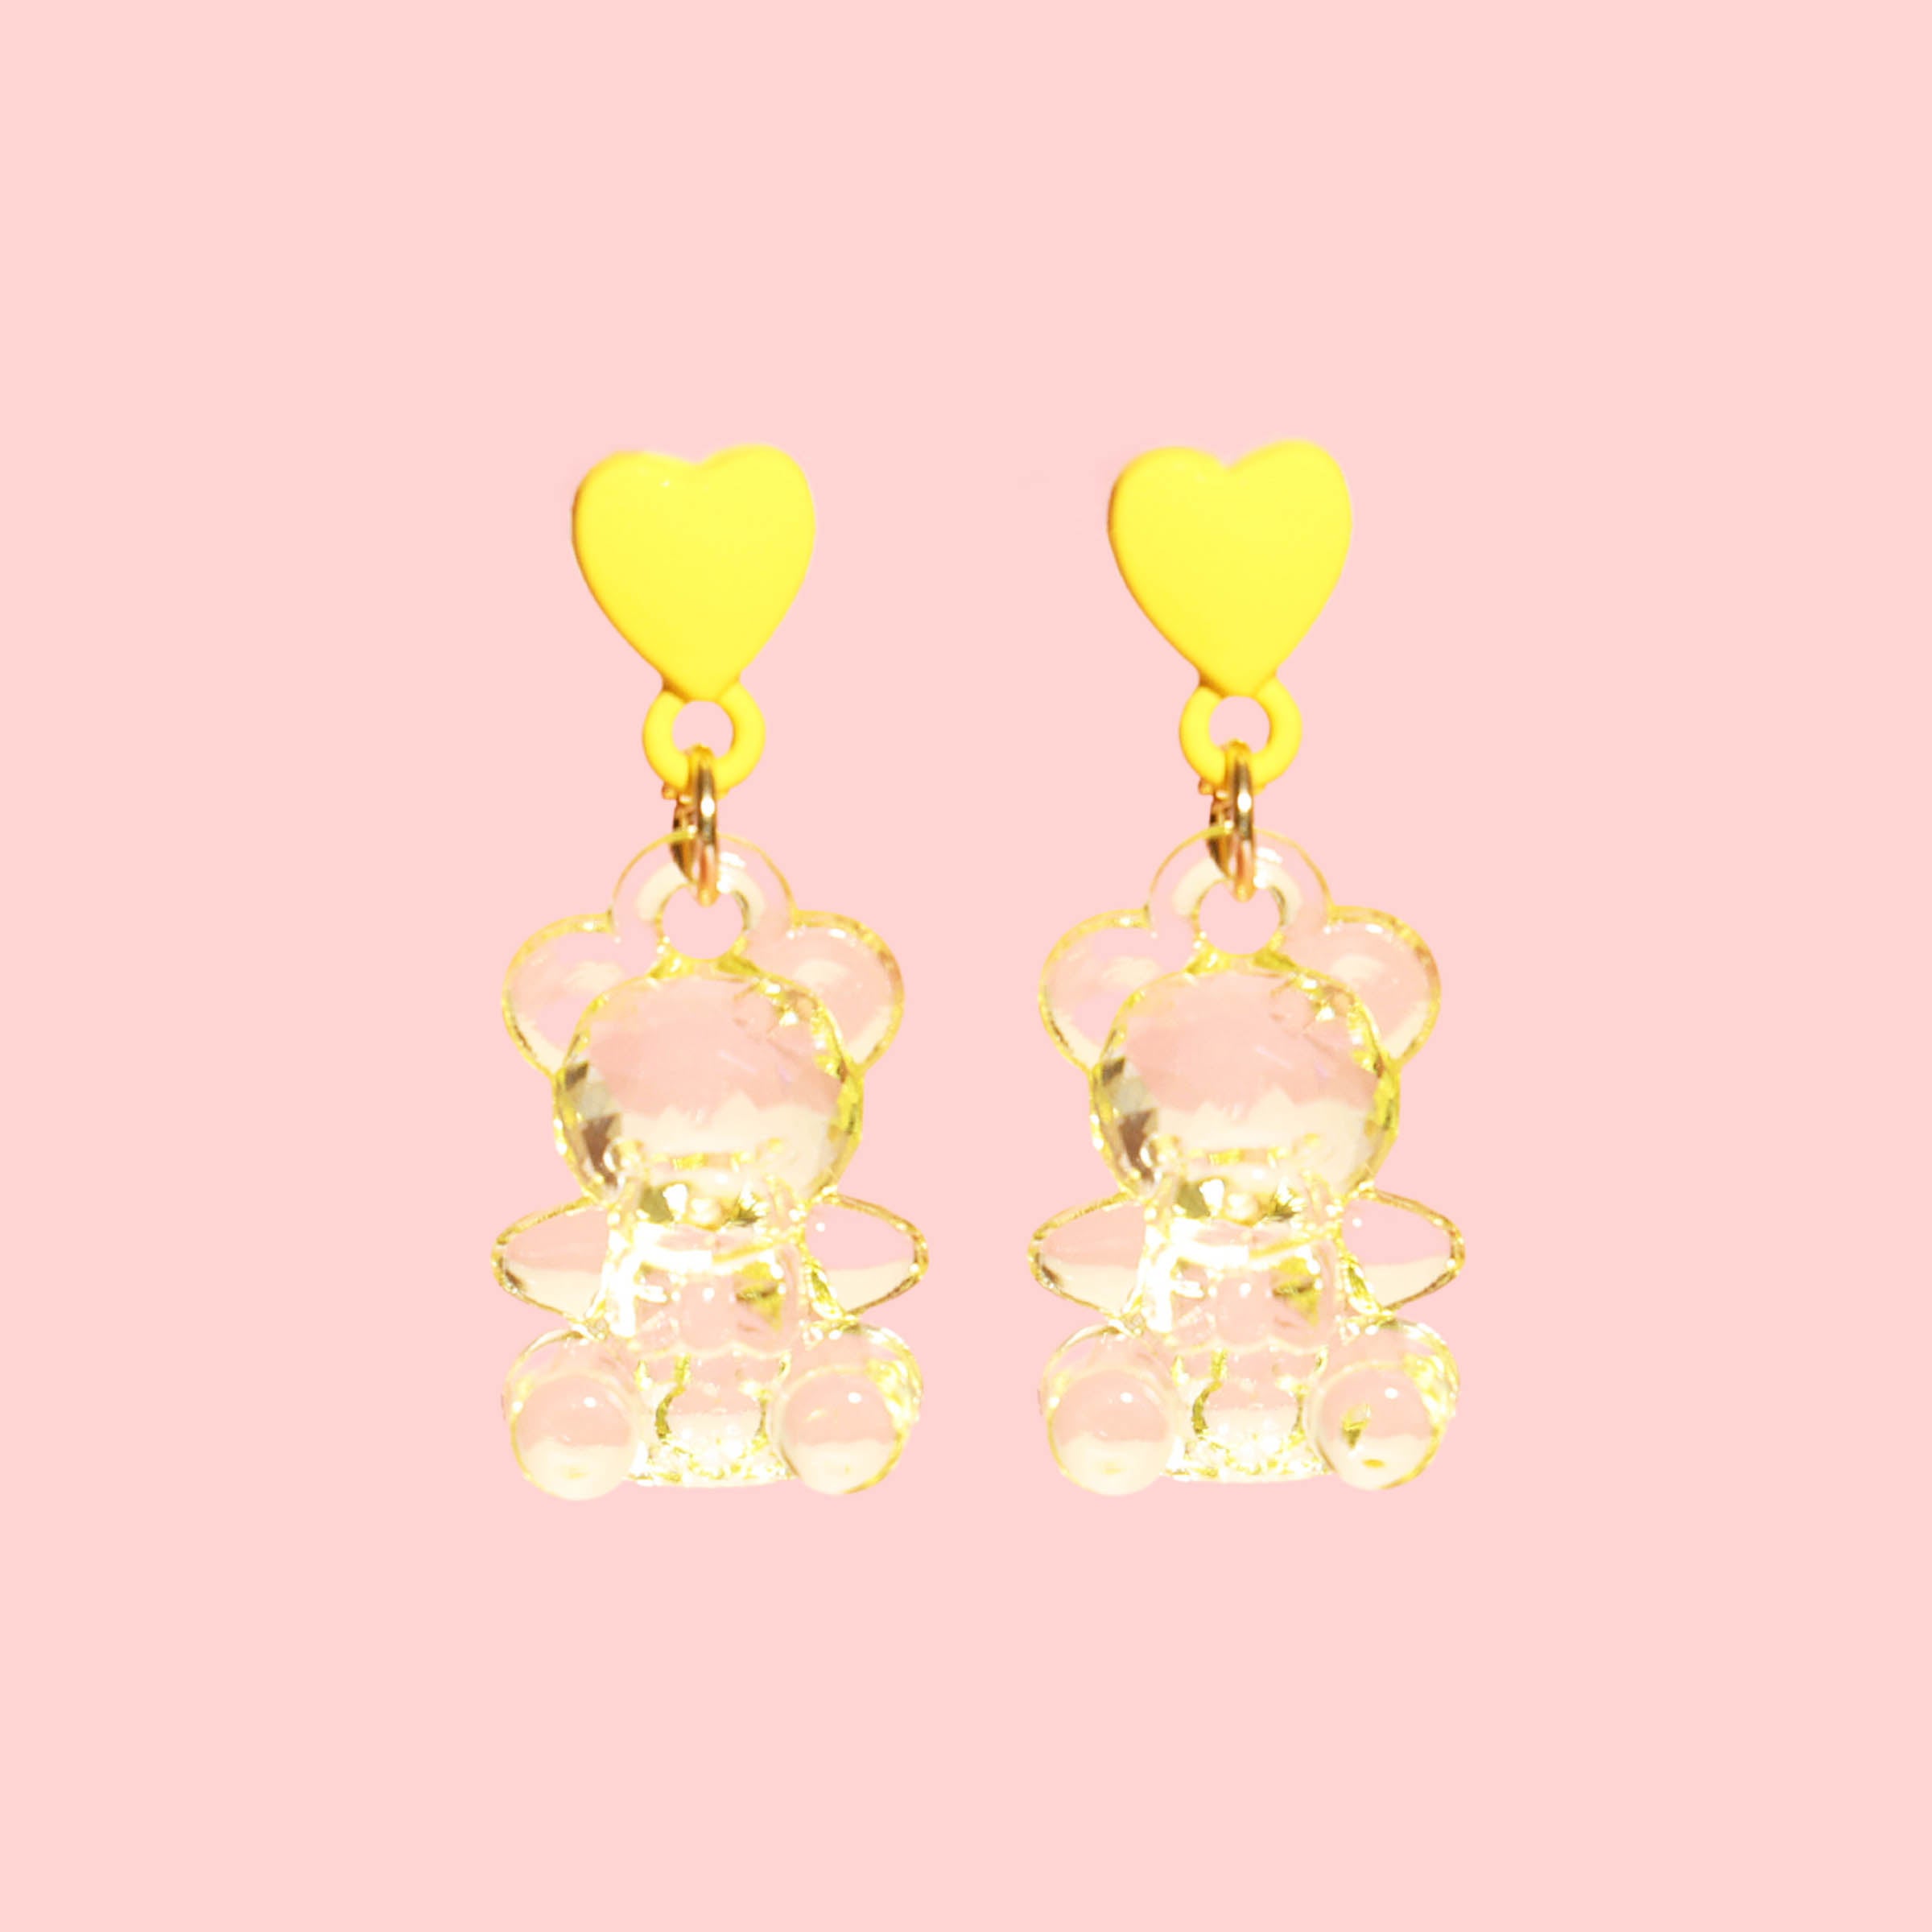 Teddy Bear Clear Crystal Heart Dangle Earrings